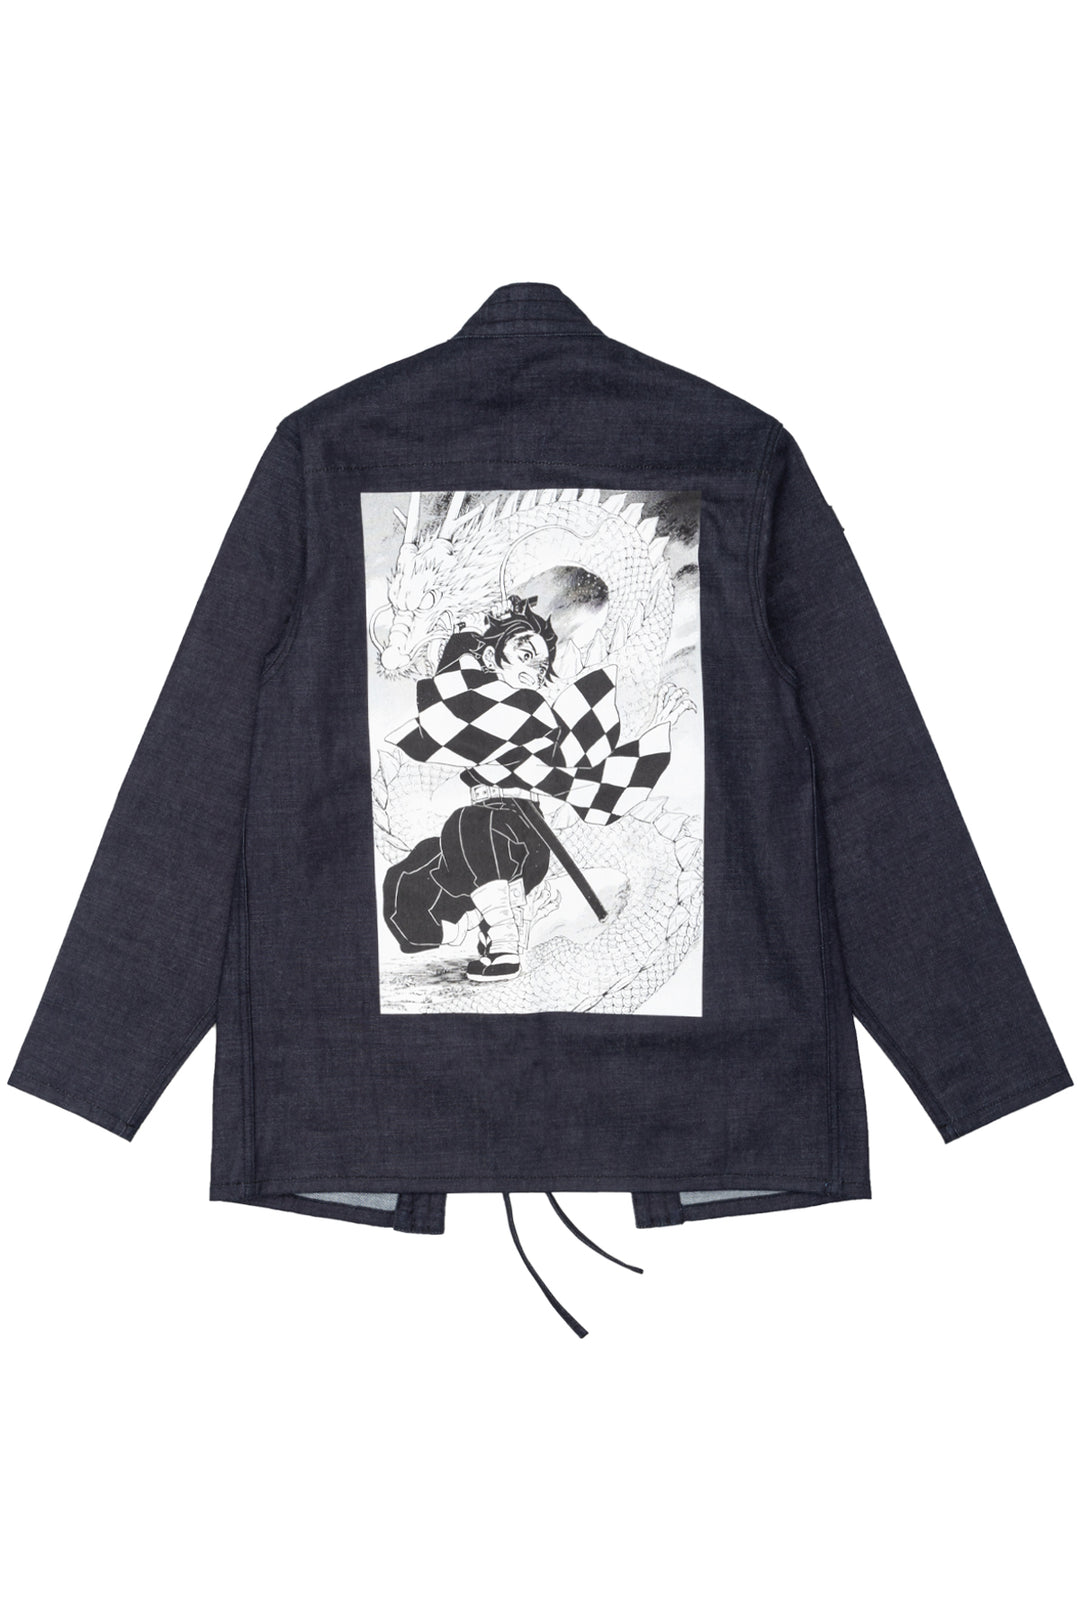 Demon Slayer: Kimetsu no Yaiba Tanjiro & Nezuko Kimono Style Jacket